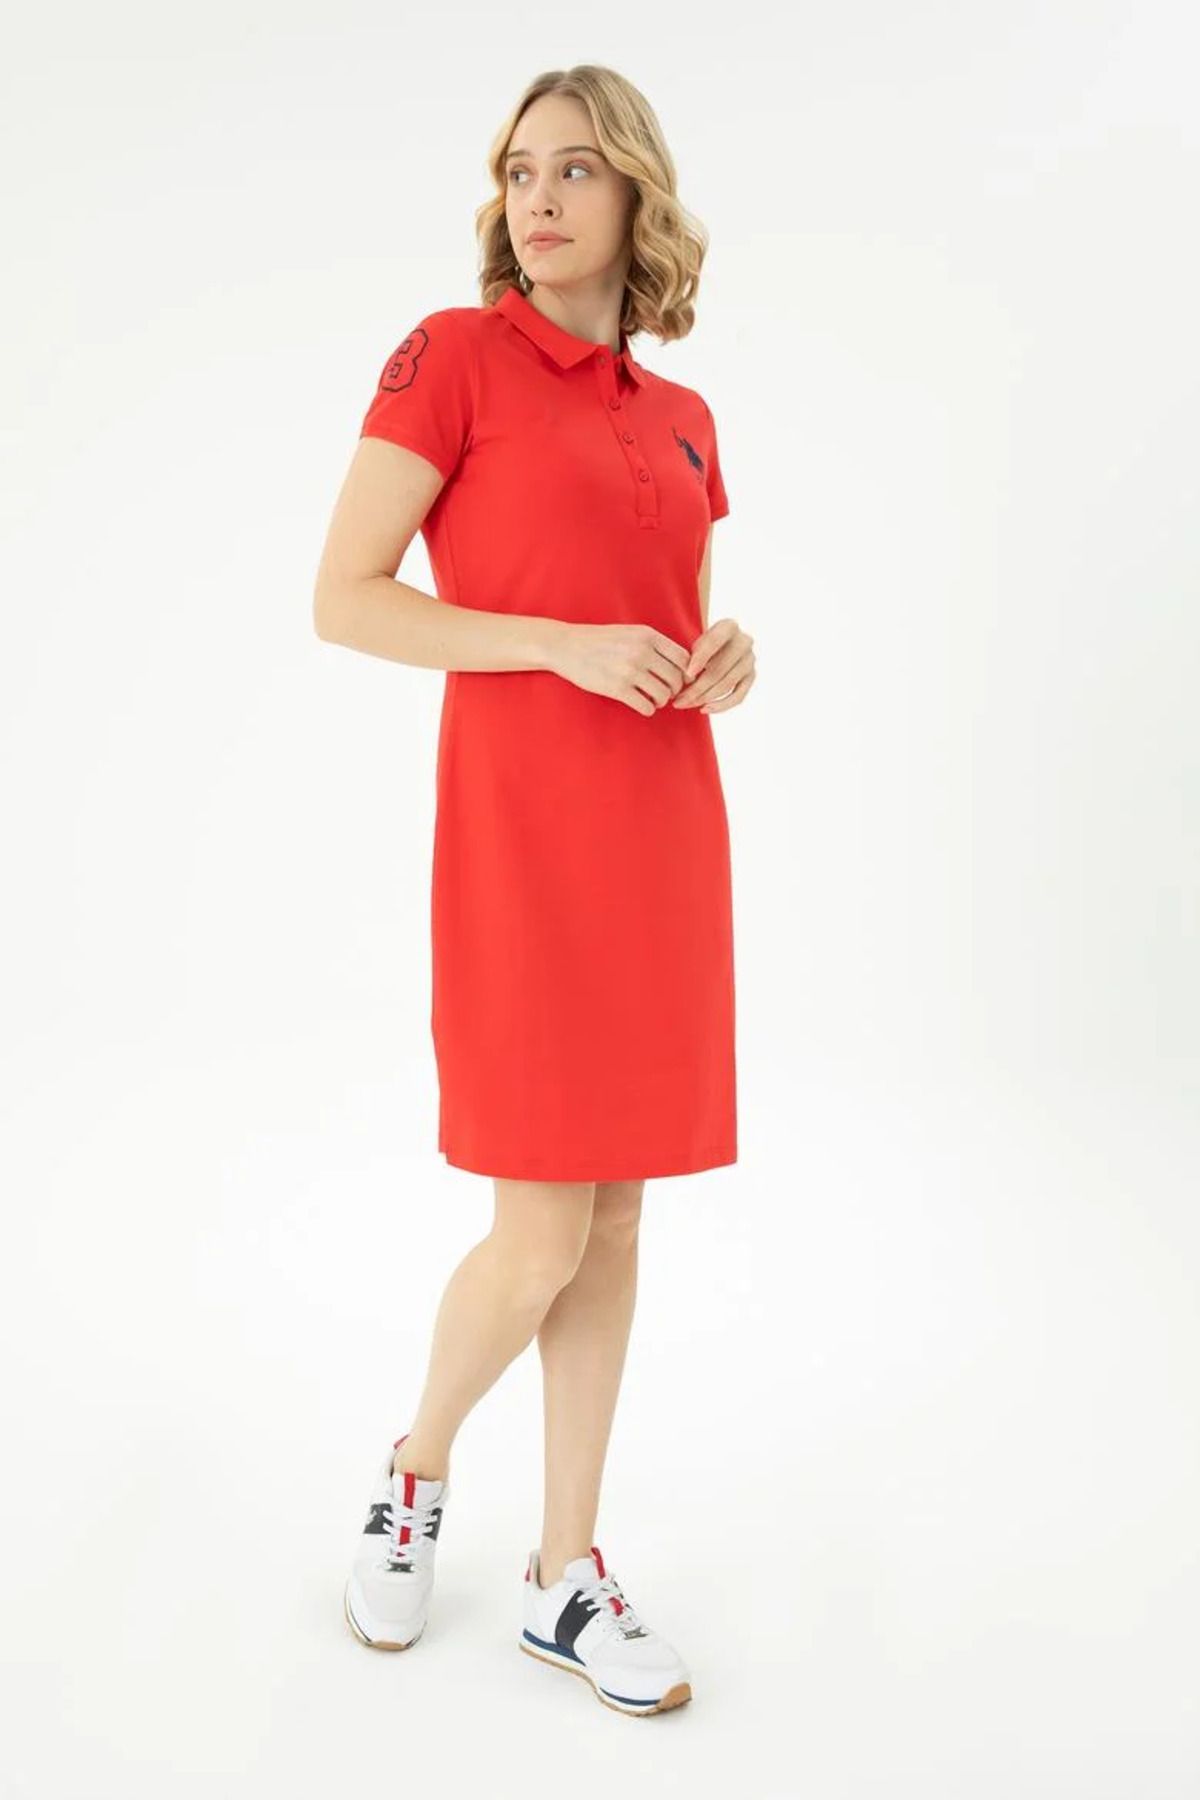 U.S. Polo Assn. Kadın Kırmızı Örme Elbise